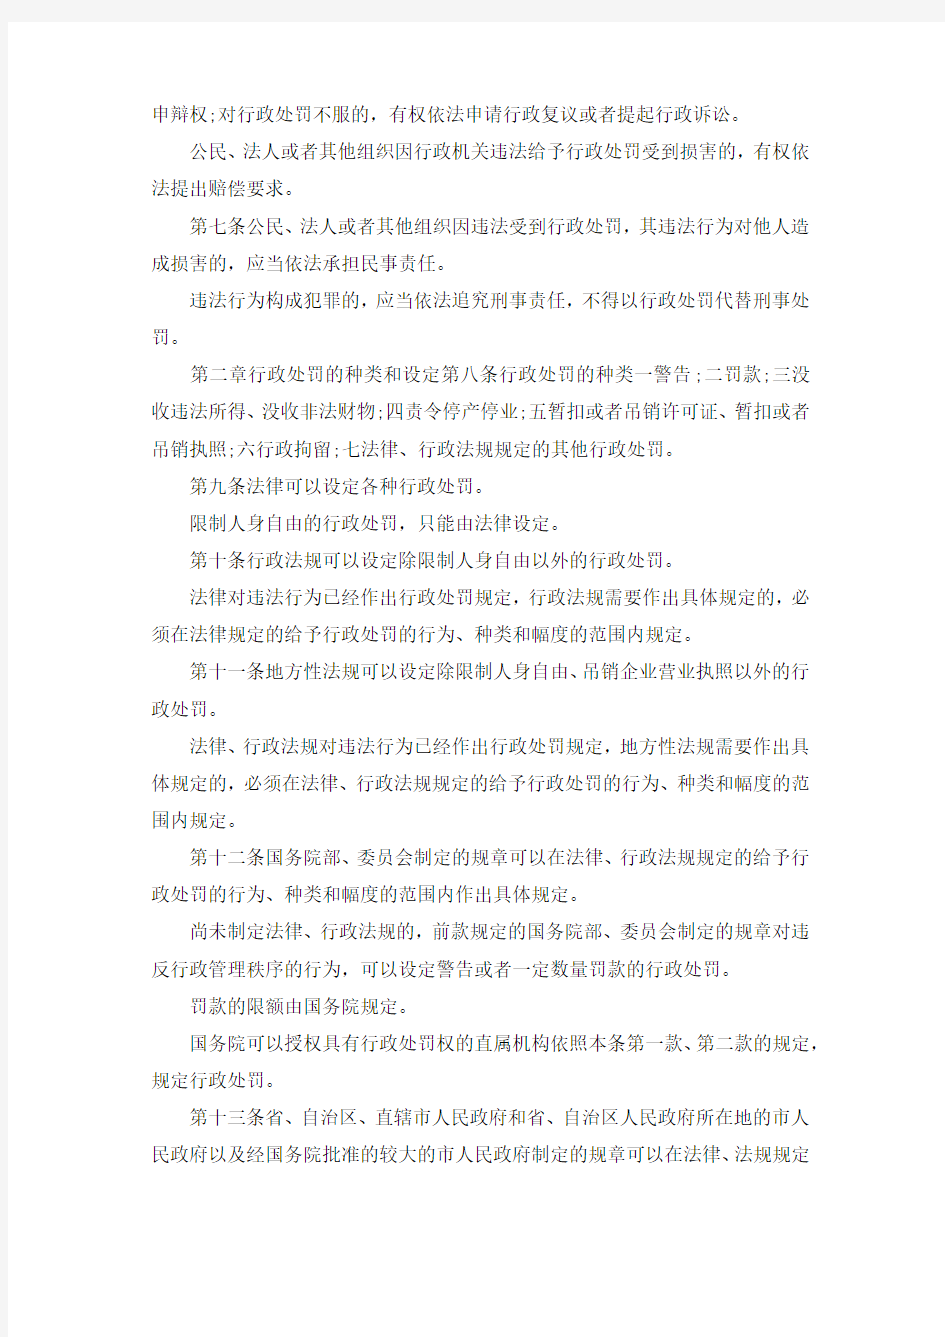 推荐下载  中华人民共和国行政处罚法(最新版)-最新